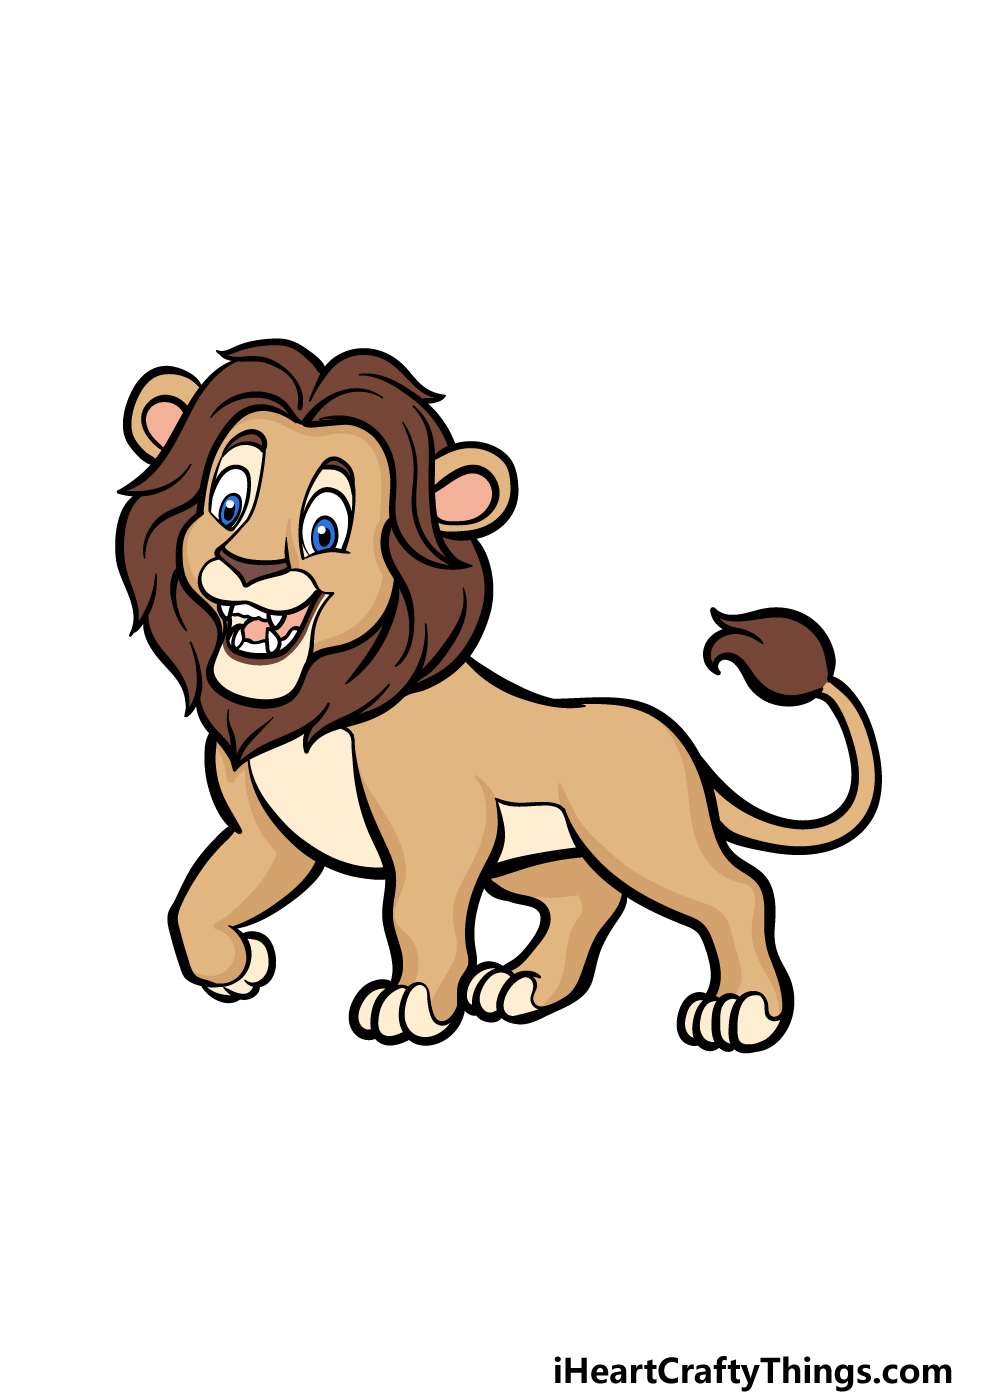 how to draw a cartoon lion step 6